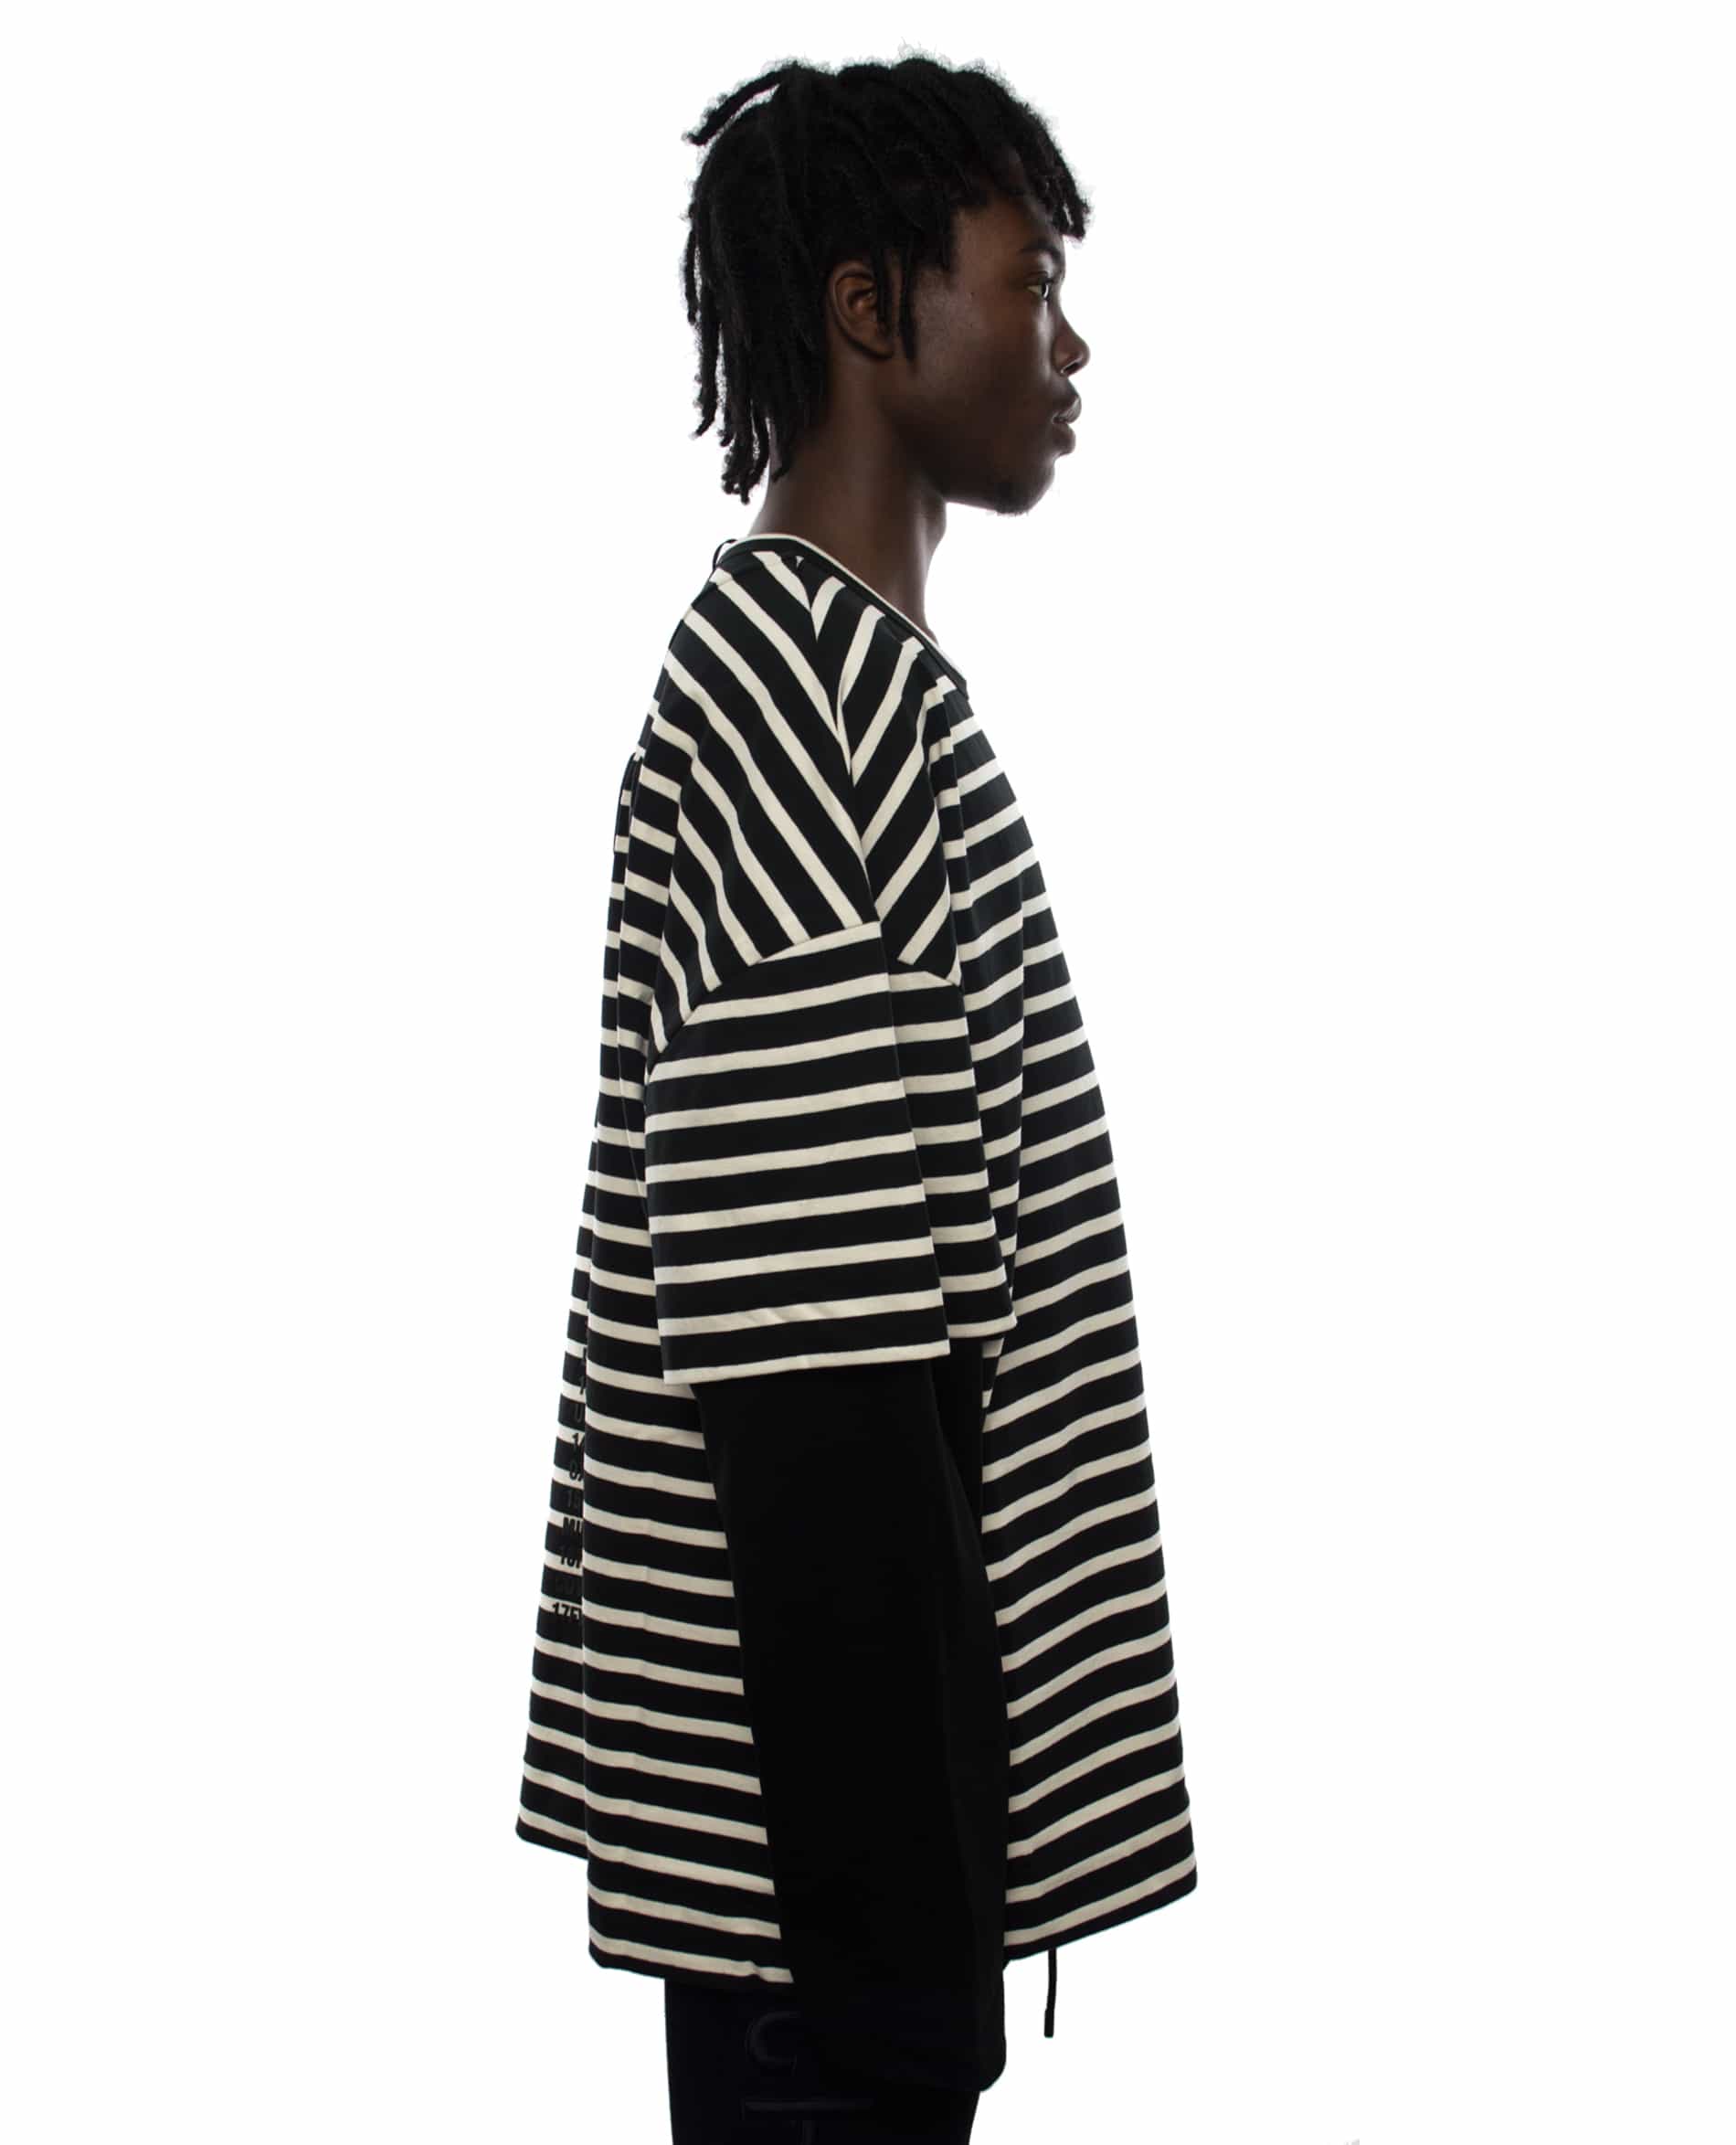 JUUN.J Archive – Subt!e T-Shirt striped